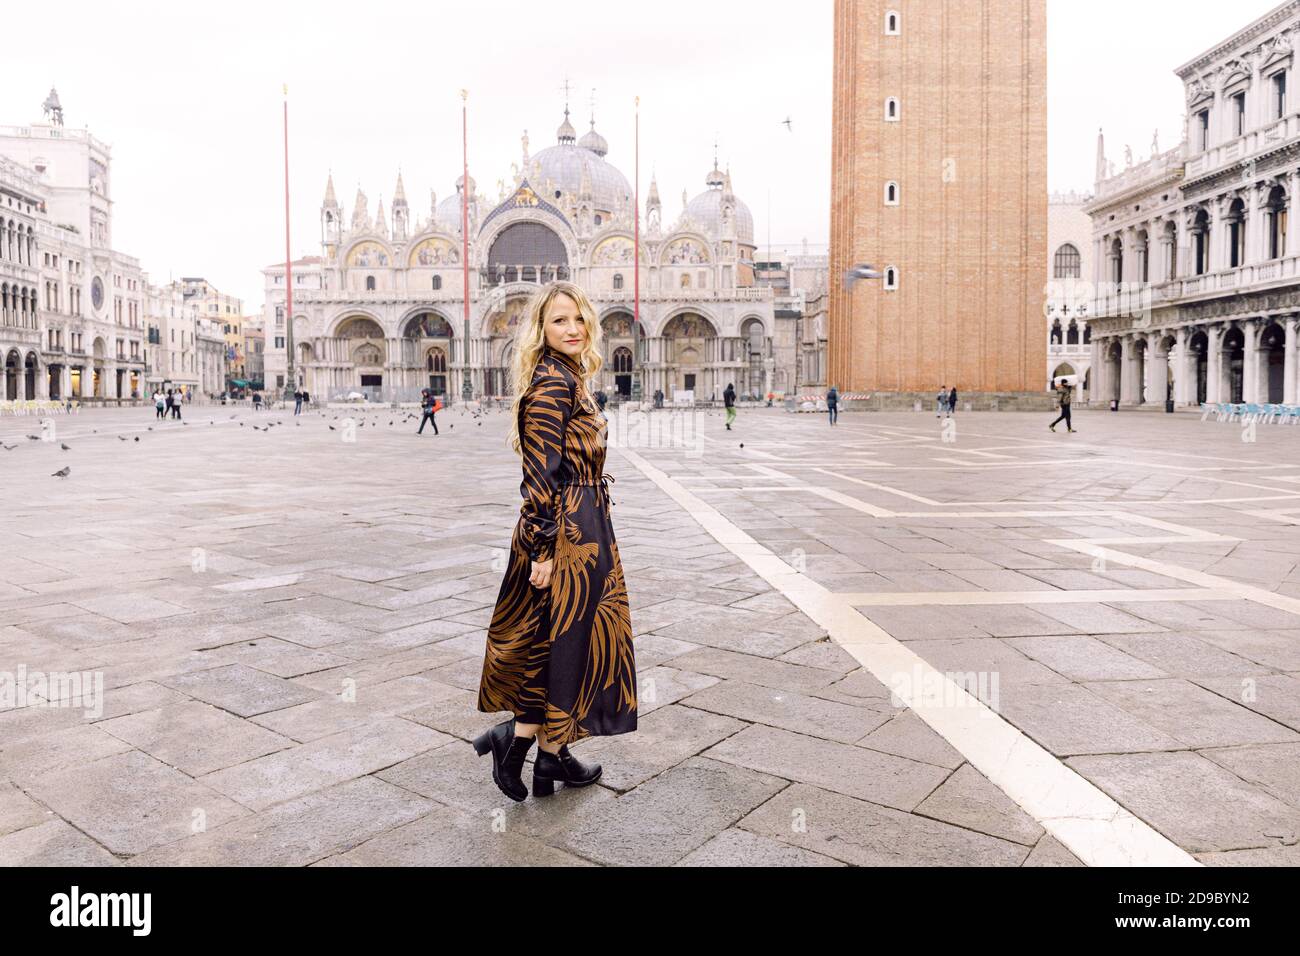 Mujer rubia mirando la cámara, con un largo vestido oscuro caminando en la Piazza San Marco, Venecia, Italia Foto de stock